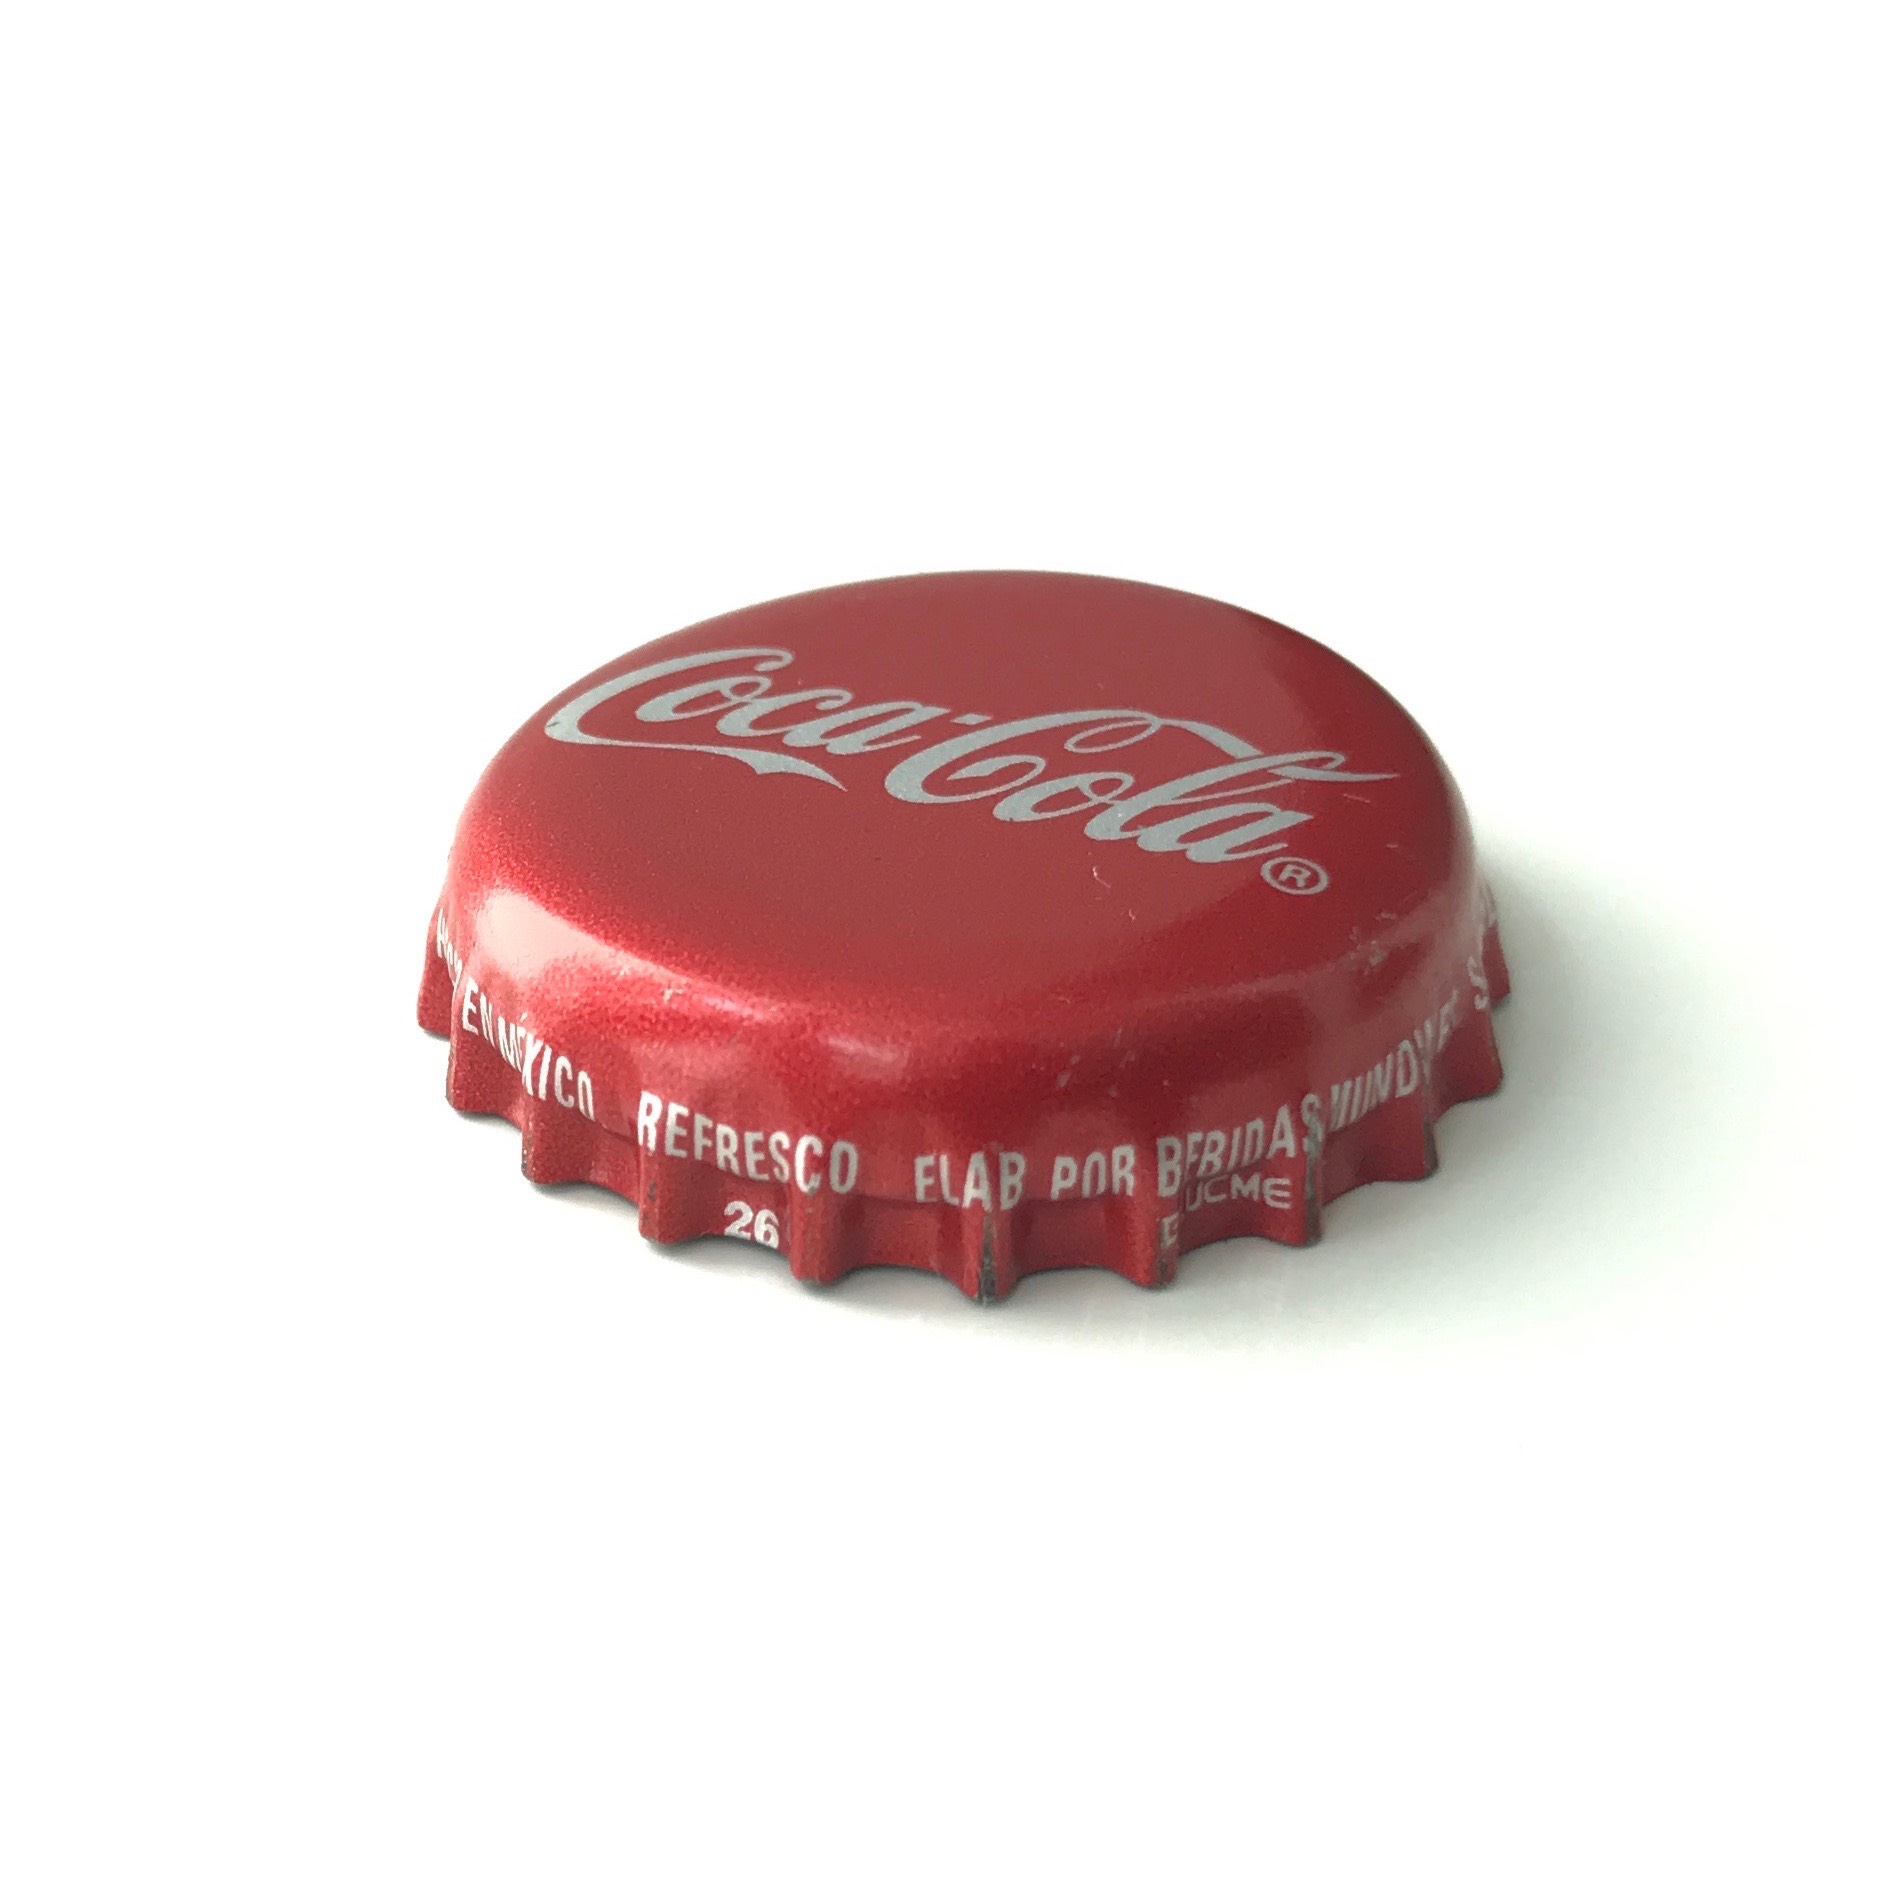 Mexican Coke bottle cap.